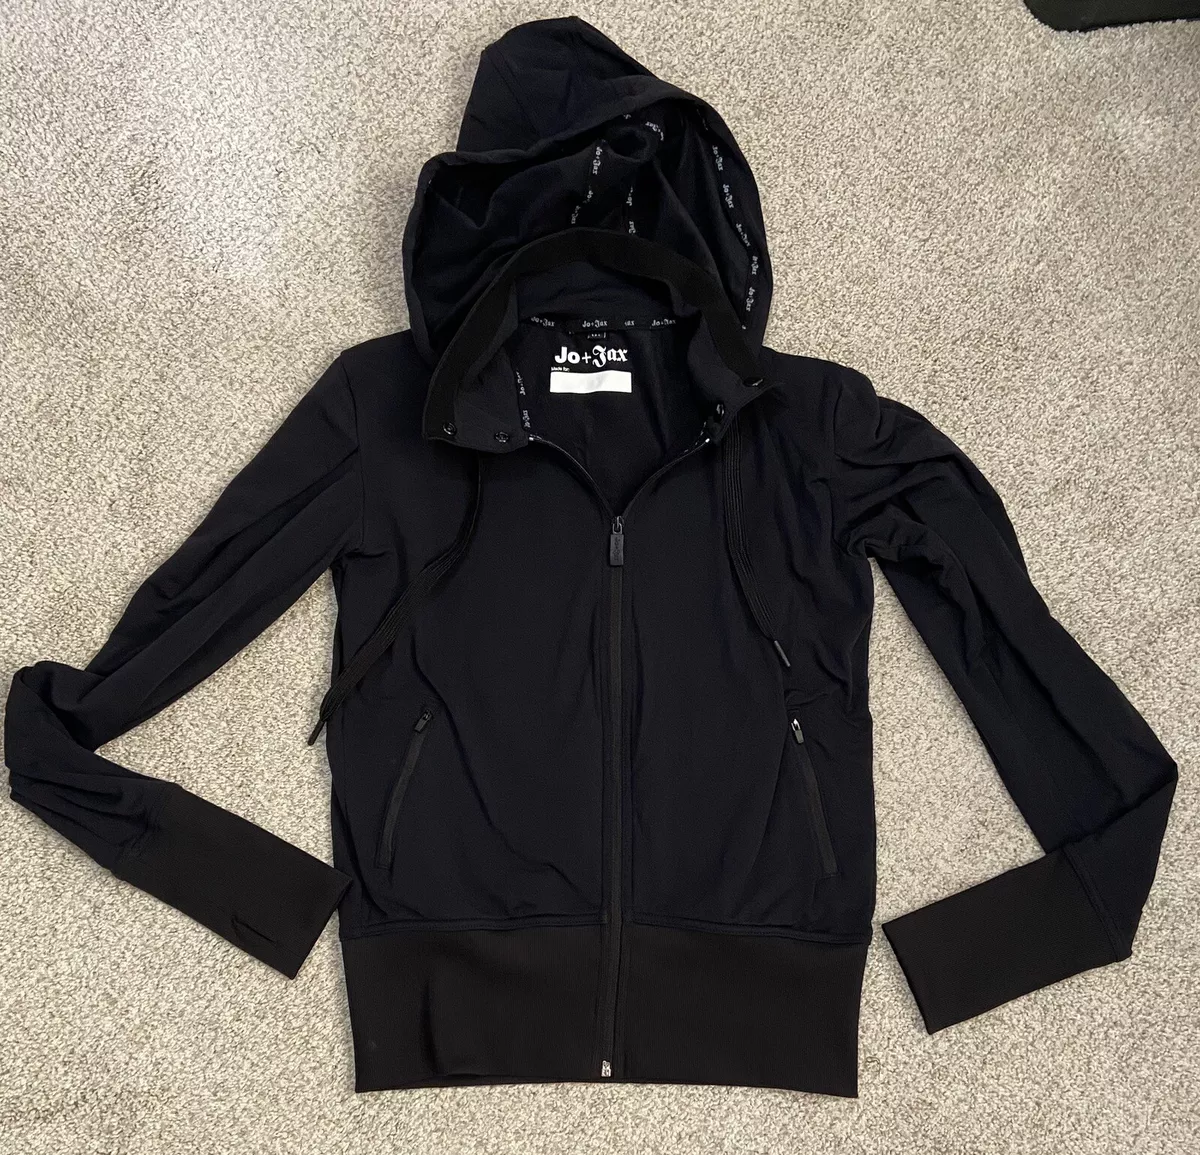 jo jax dancewear + Black Zip Jacket hoodie Size MA